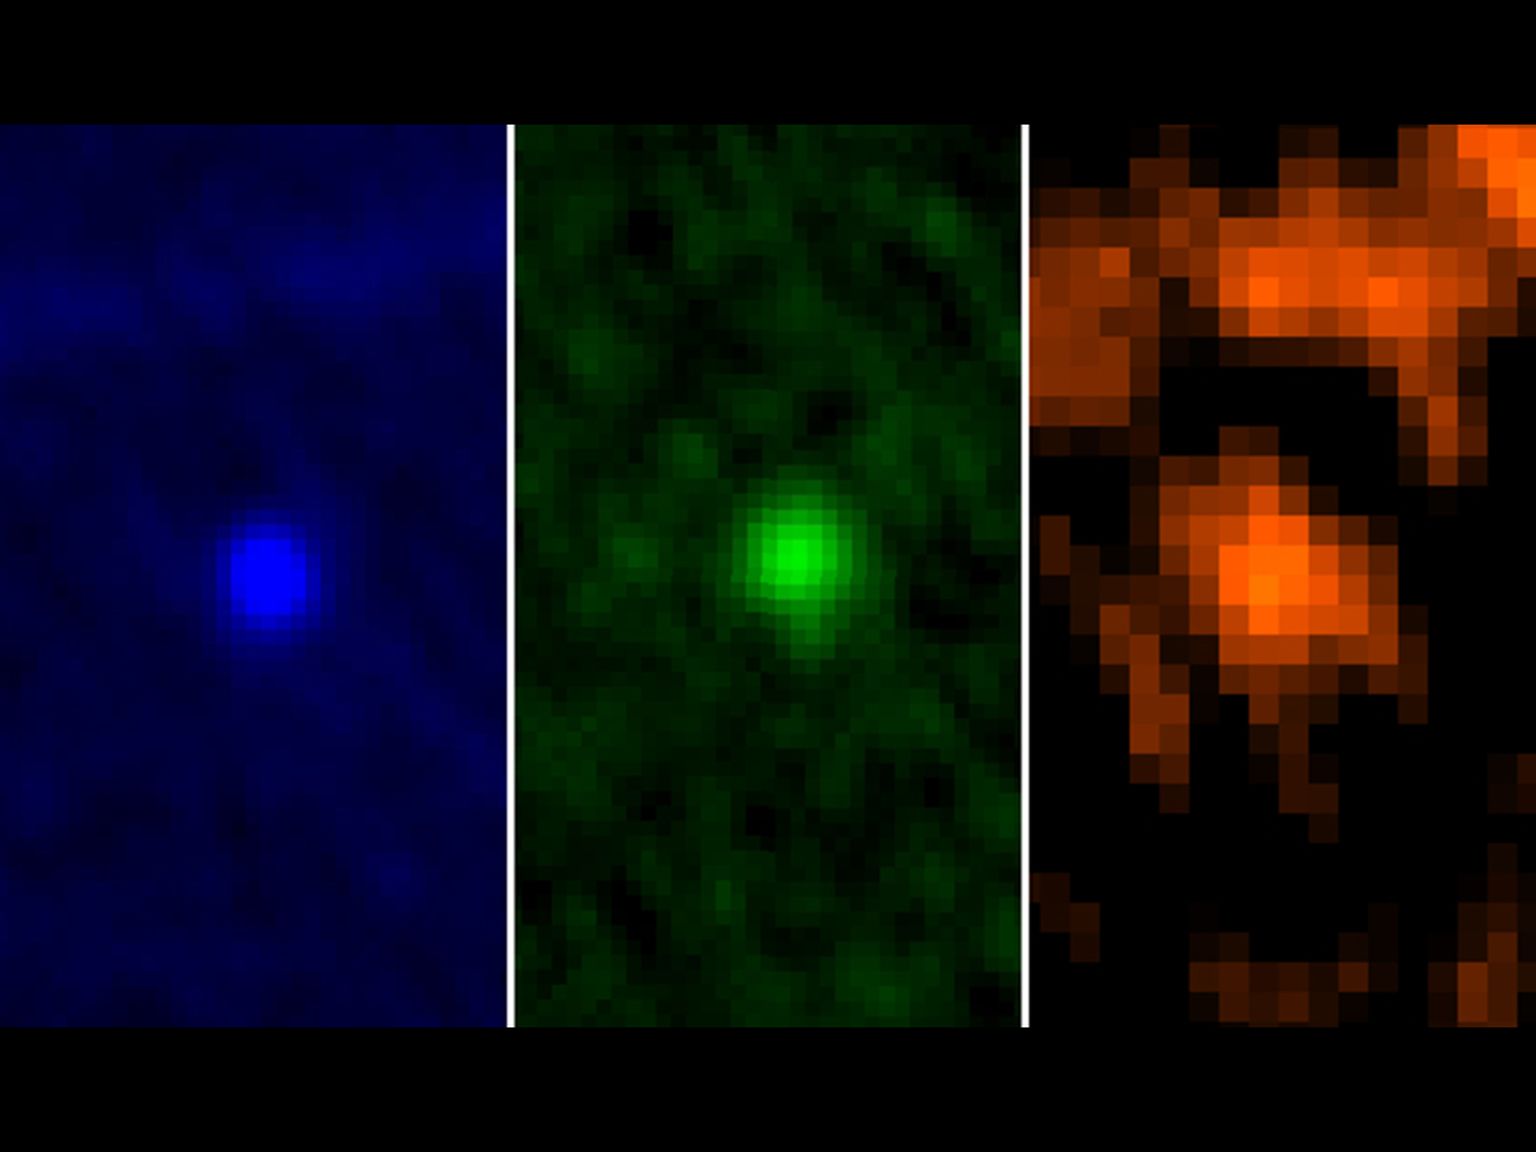 Euroopa Kosmoseagentuuri Herscheli kosmoseobservatooriumi tehtud foto 99942 Apophis asteroidist, kui see liikus 5. ja 6. jaanuaril 2013 Maale kosmilisi vahemaid arvestades üsna lähedal